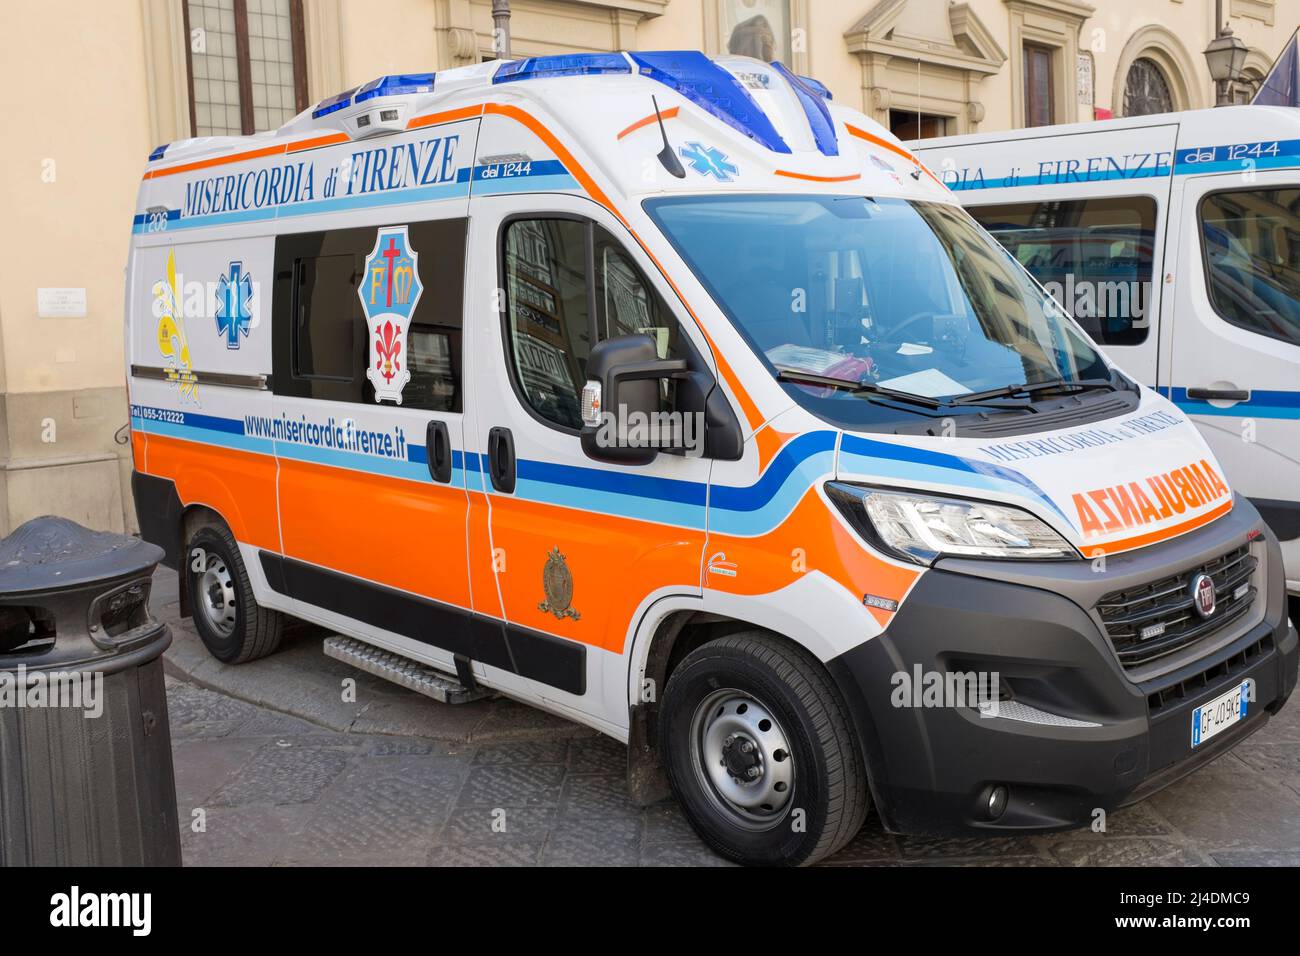 Ambulance Florence Italy Stock Photo